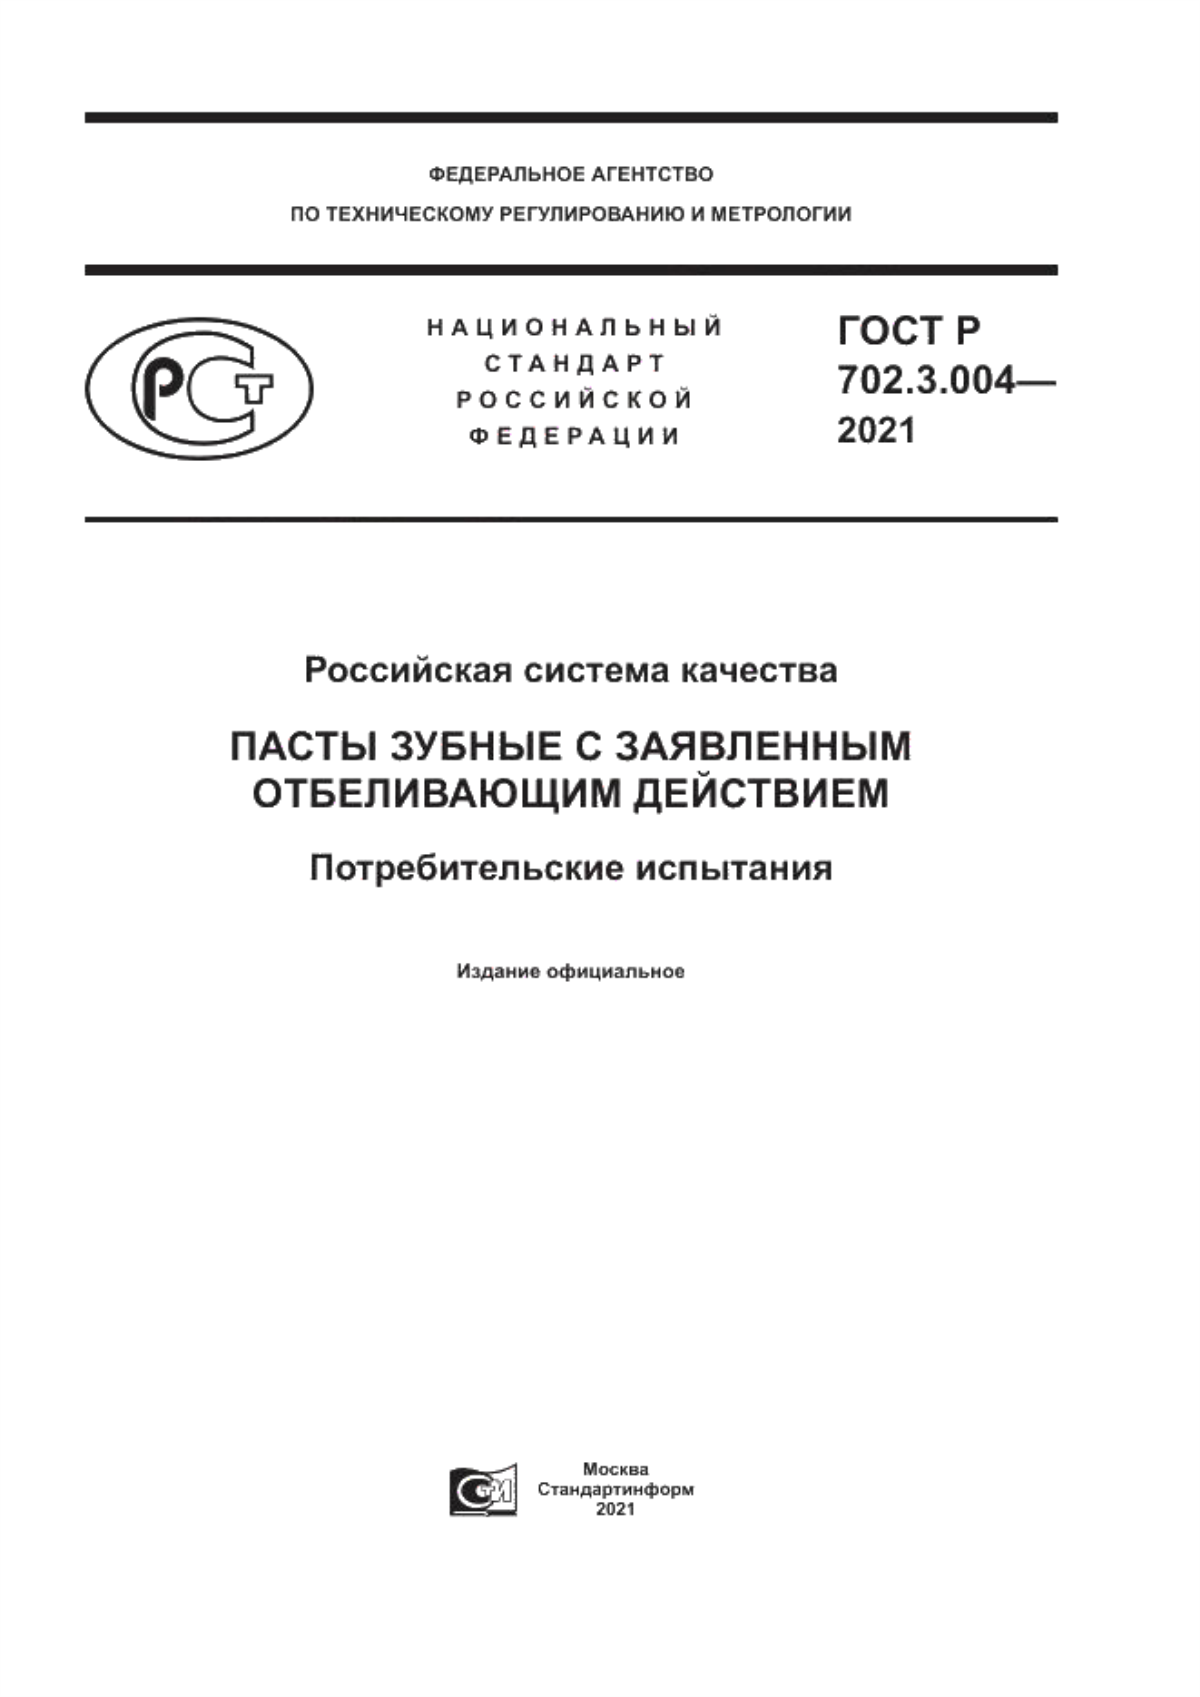 ГОСТ Р 702.3.004-2021 Российская система качества. Пасты зубные с заявленным отбеливающим действием. Потребительские испытания